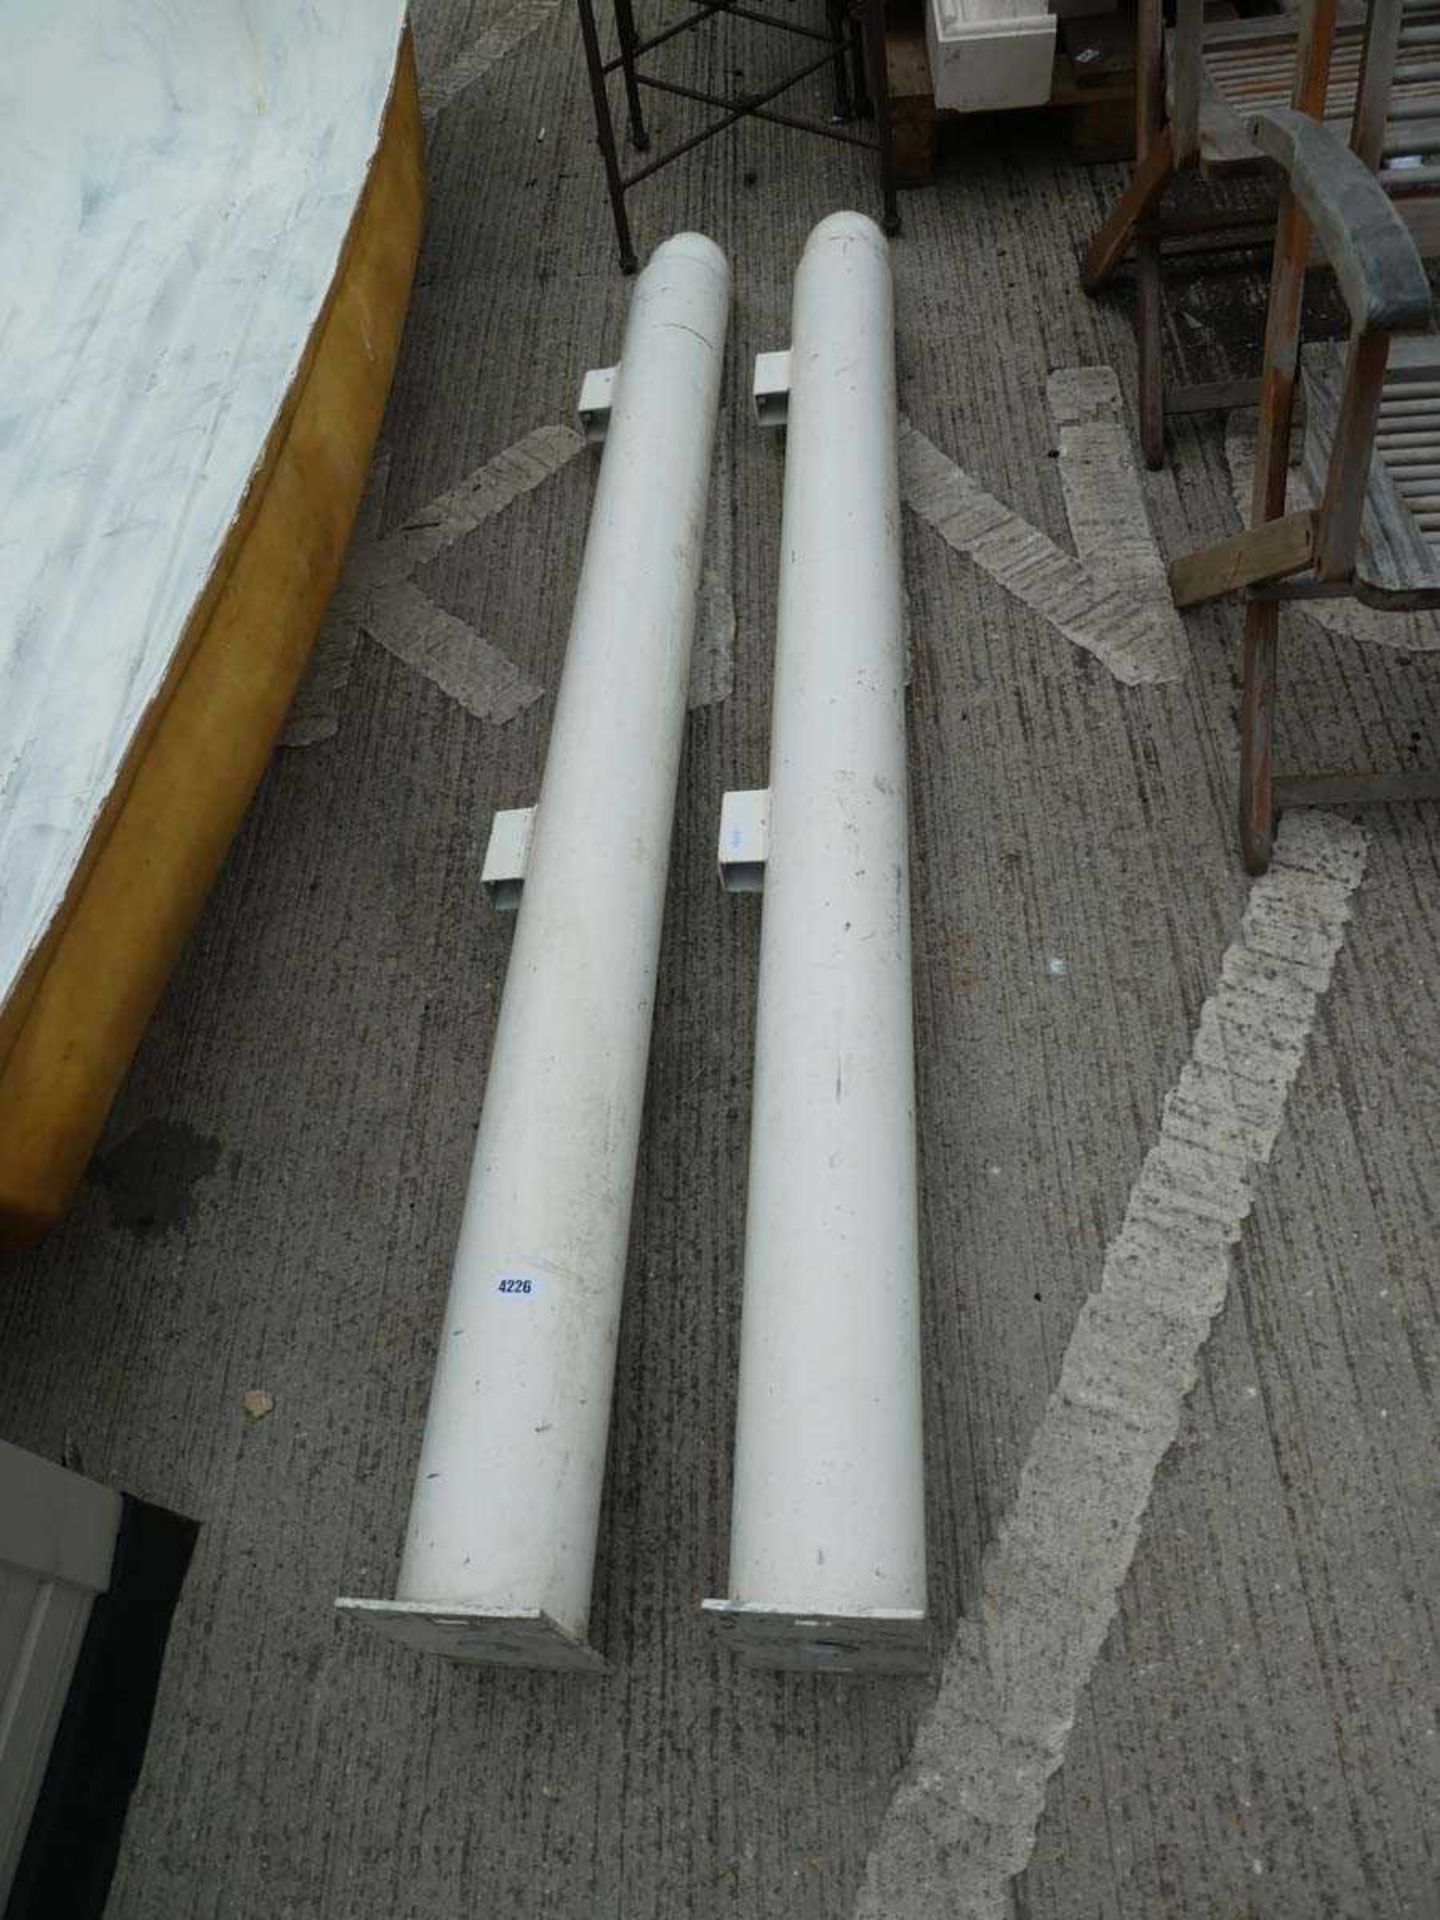 2 large metal posts